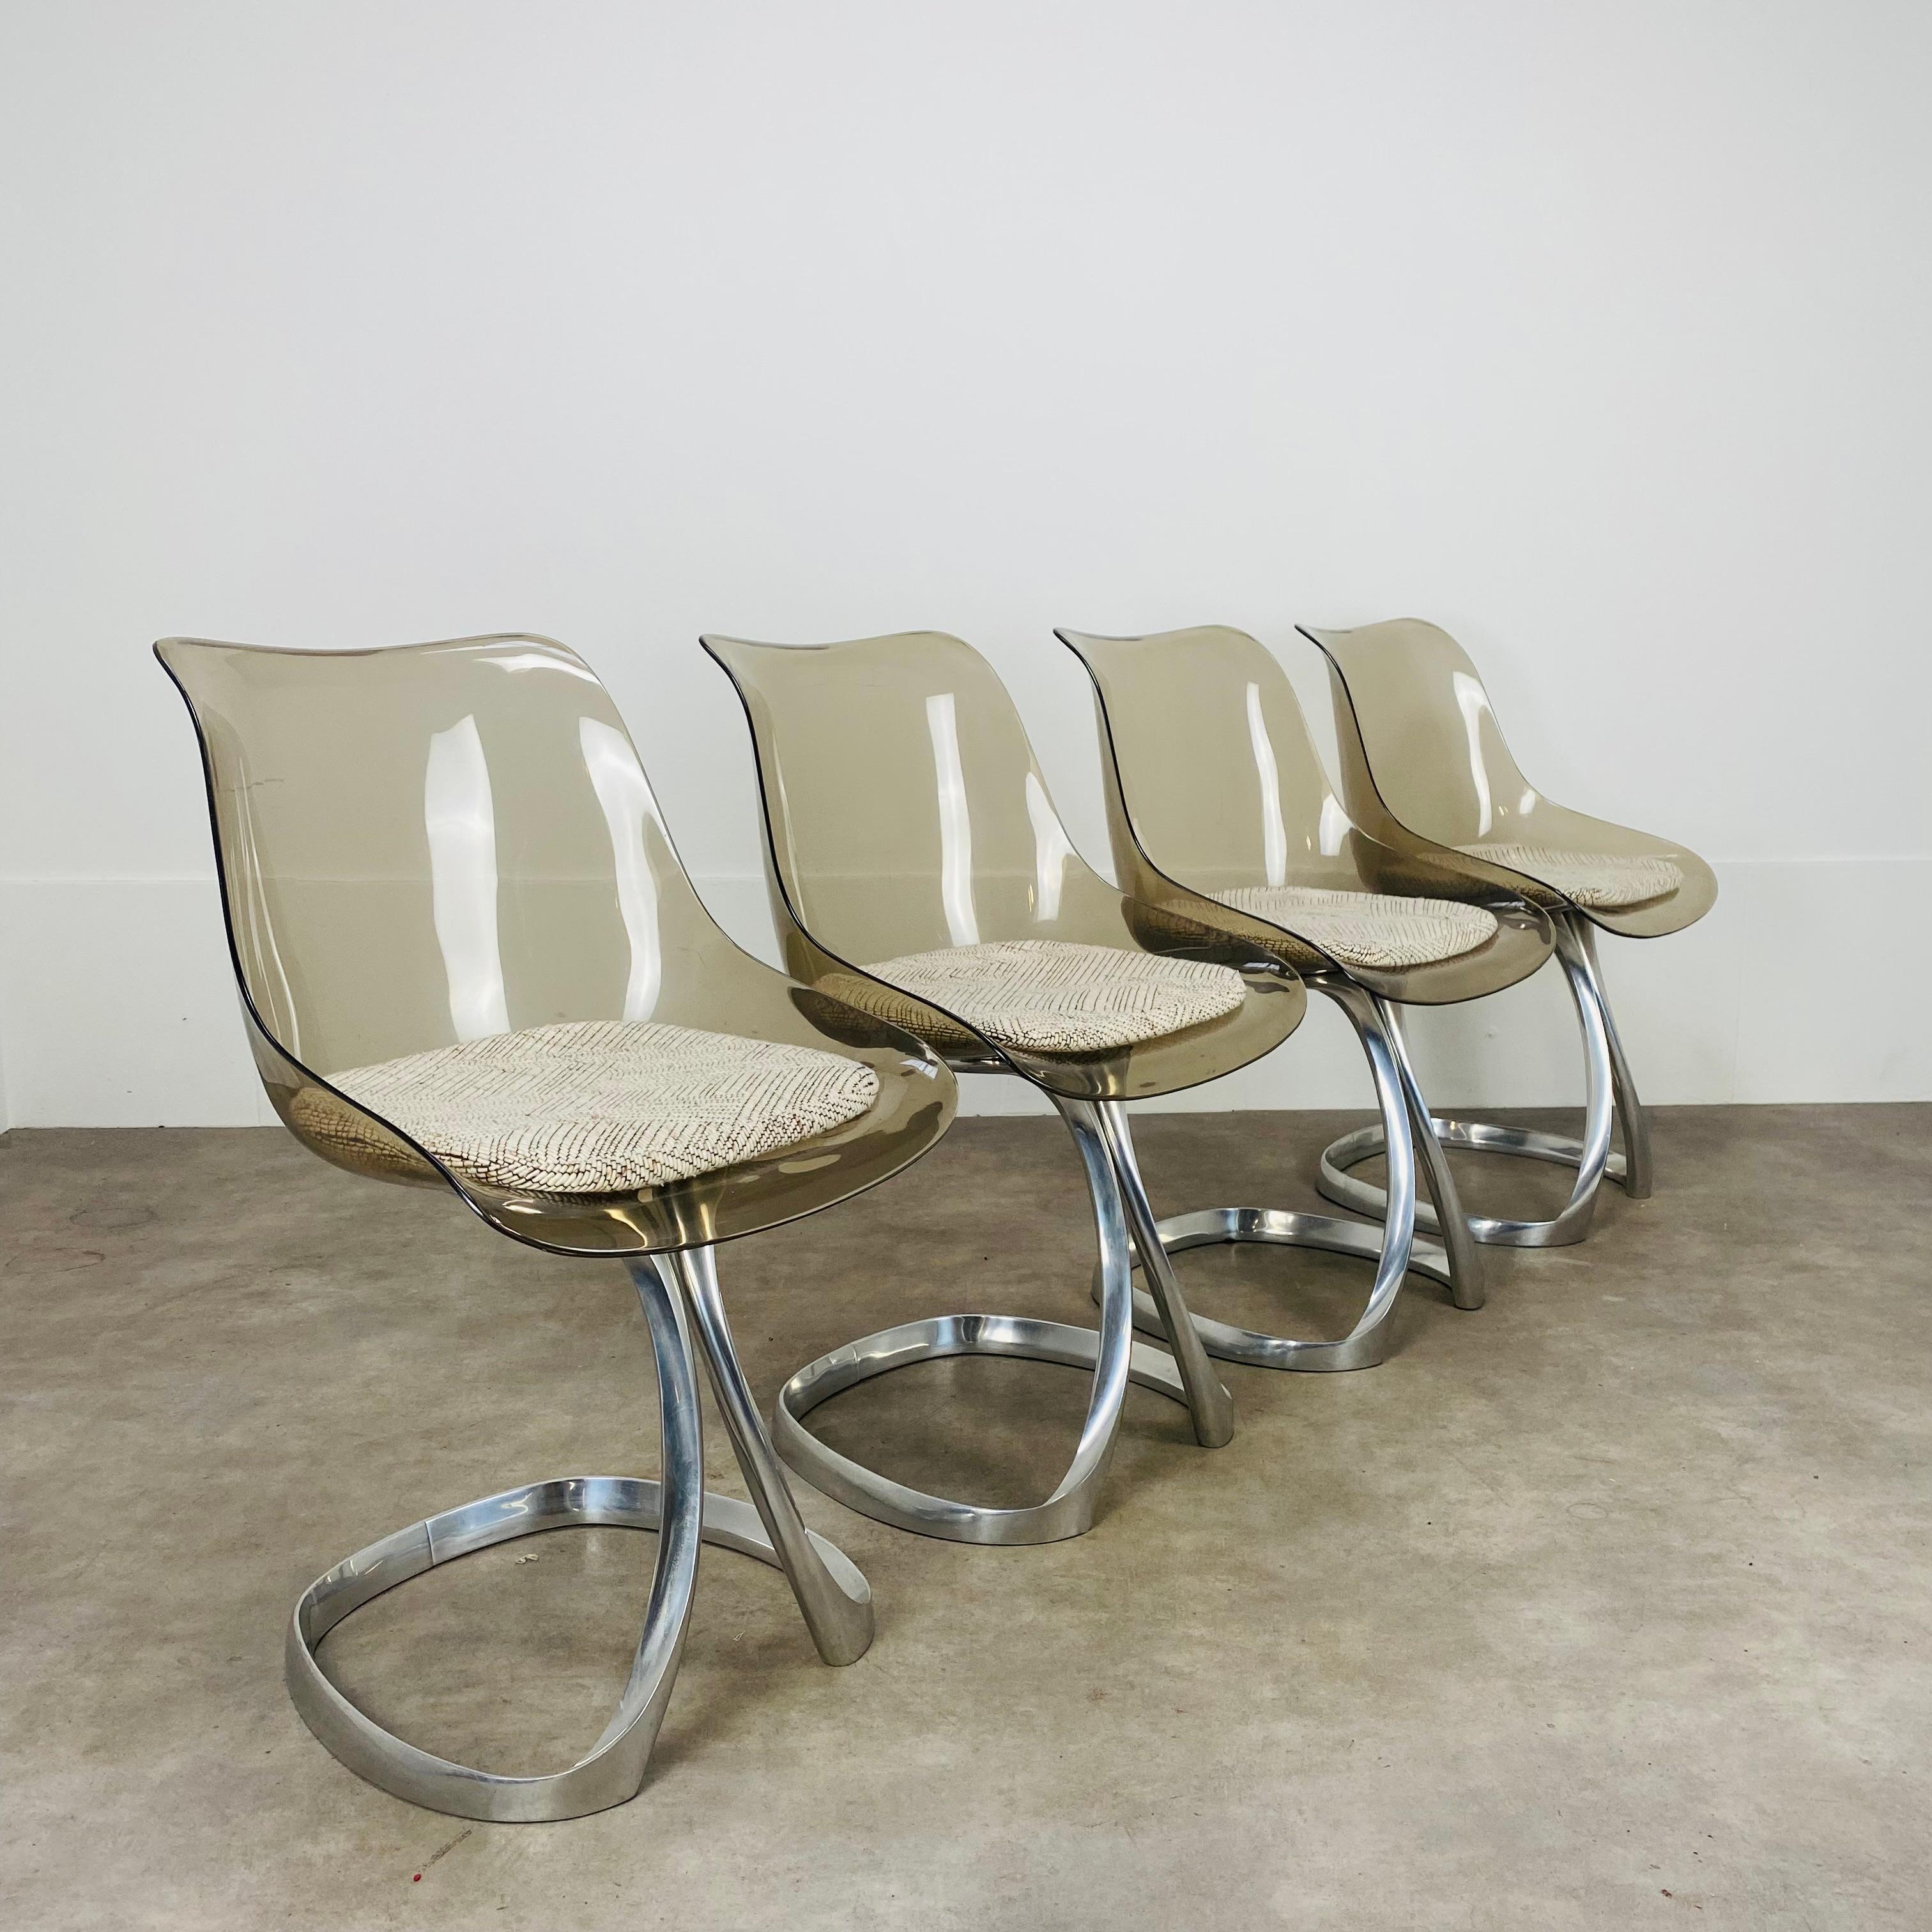 Ensemble de quatre chaises de salle à manger par le designer français Michel Charron, design typique des années soixante-dix. 
Très bel état, rares marques d'usure sur le plexiglas et les piétements des chaises en aluminium. Les coussins en tissu